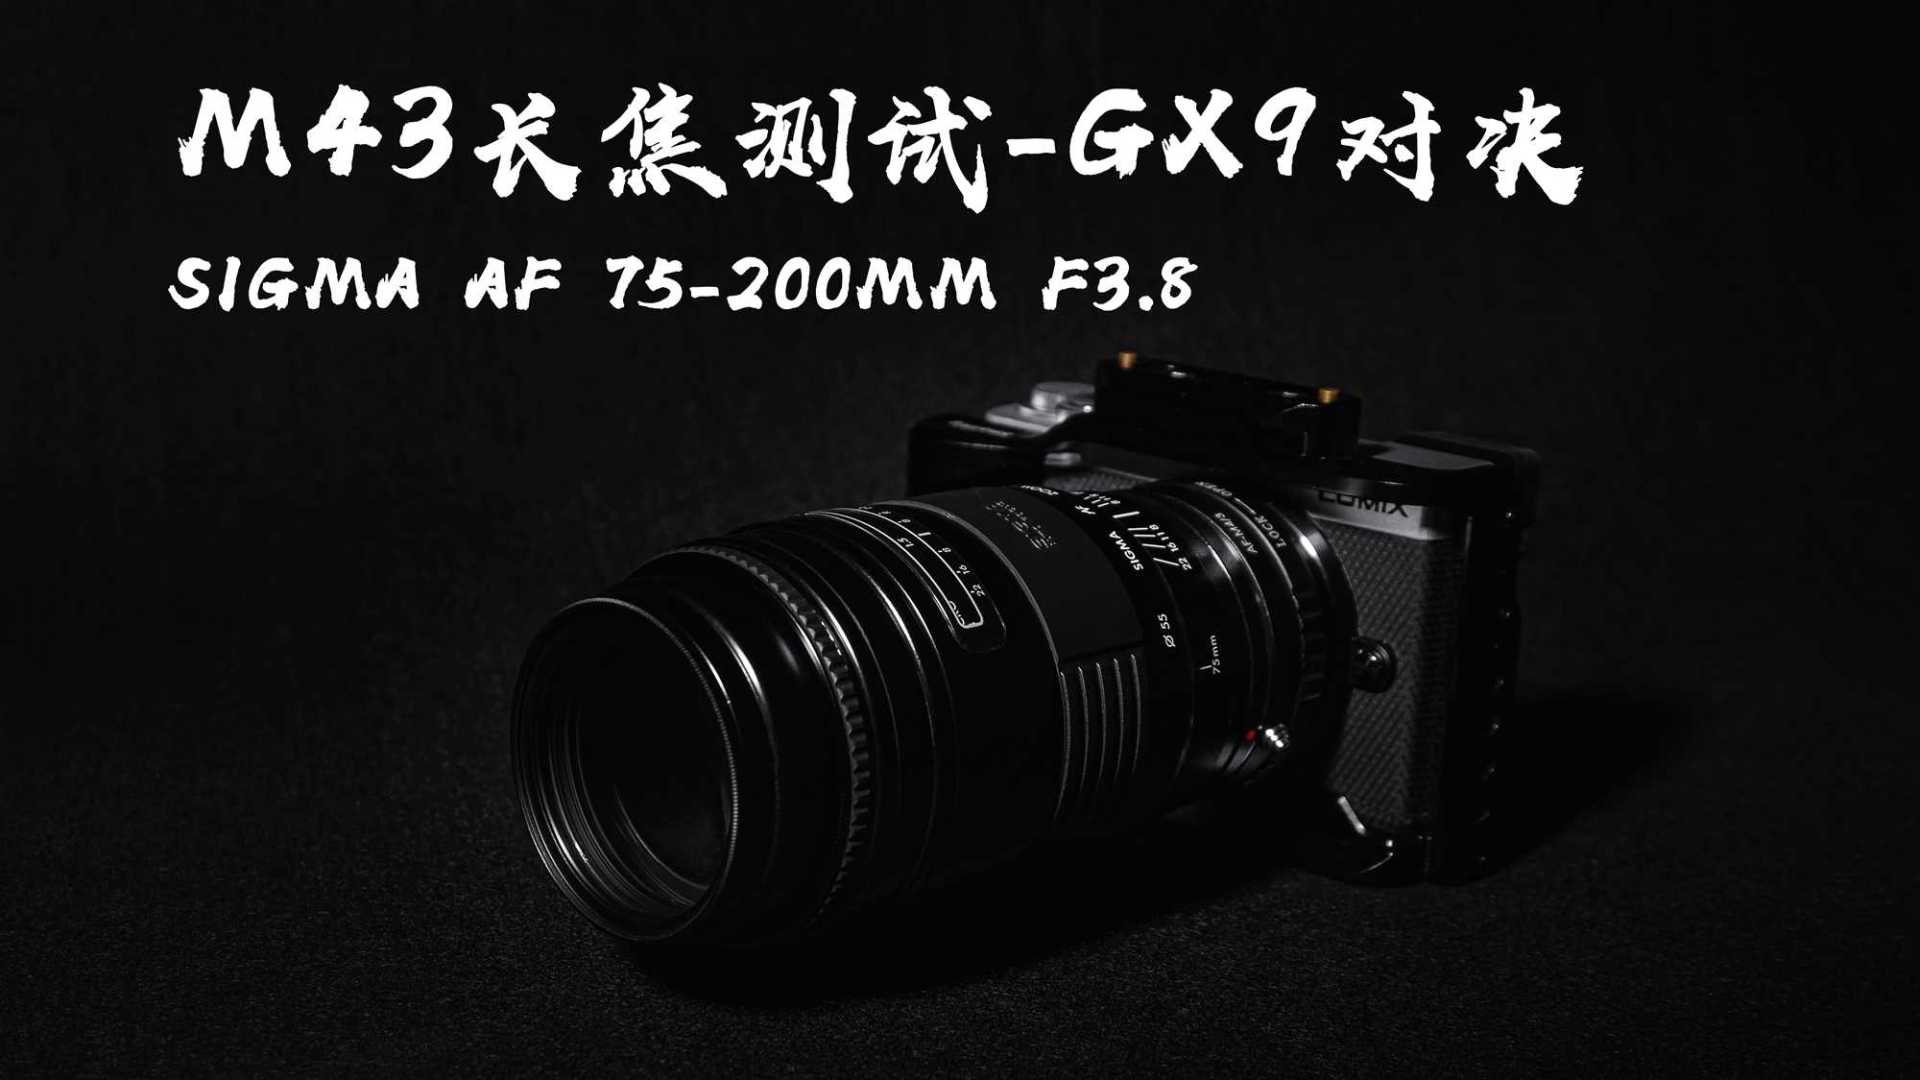 2022年最具性价比长焦镜头，松下GX9测试适马AF 75-200mm F3.8